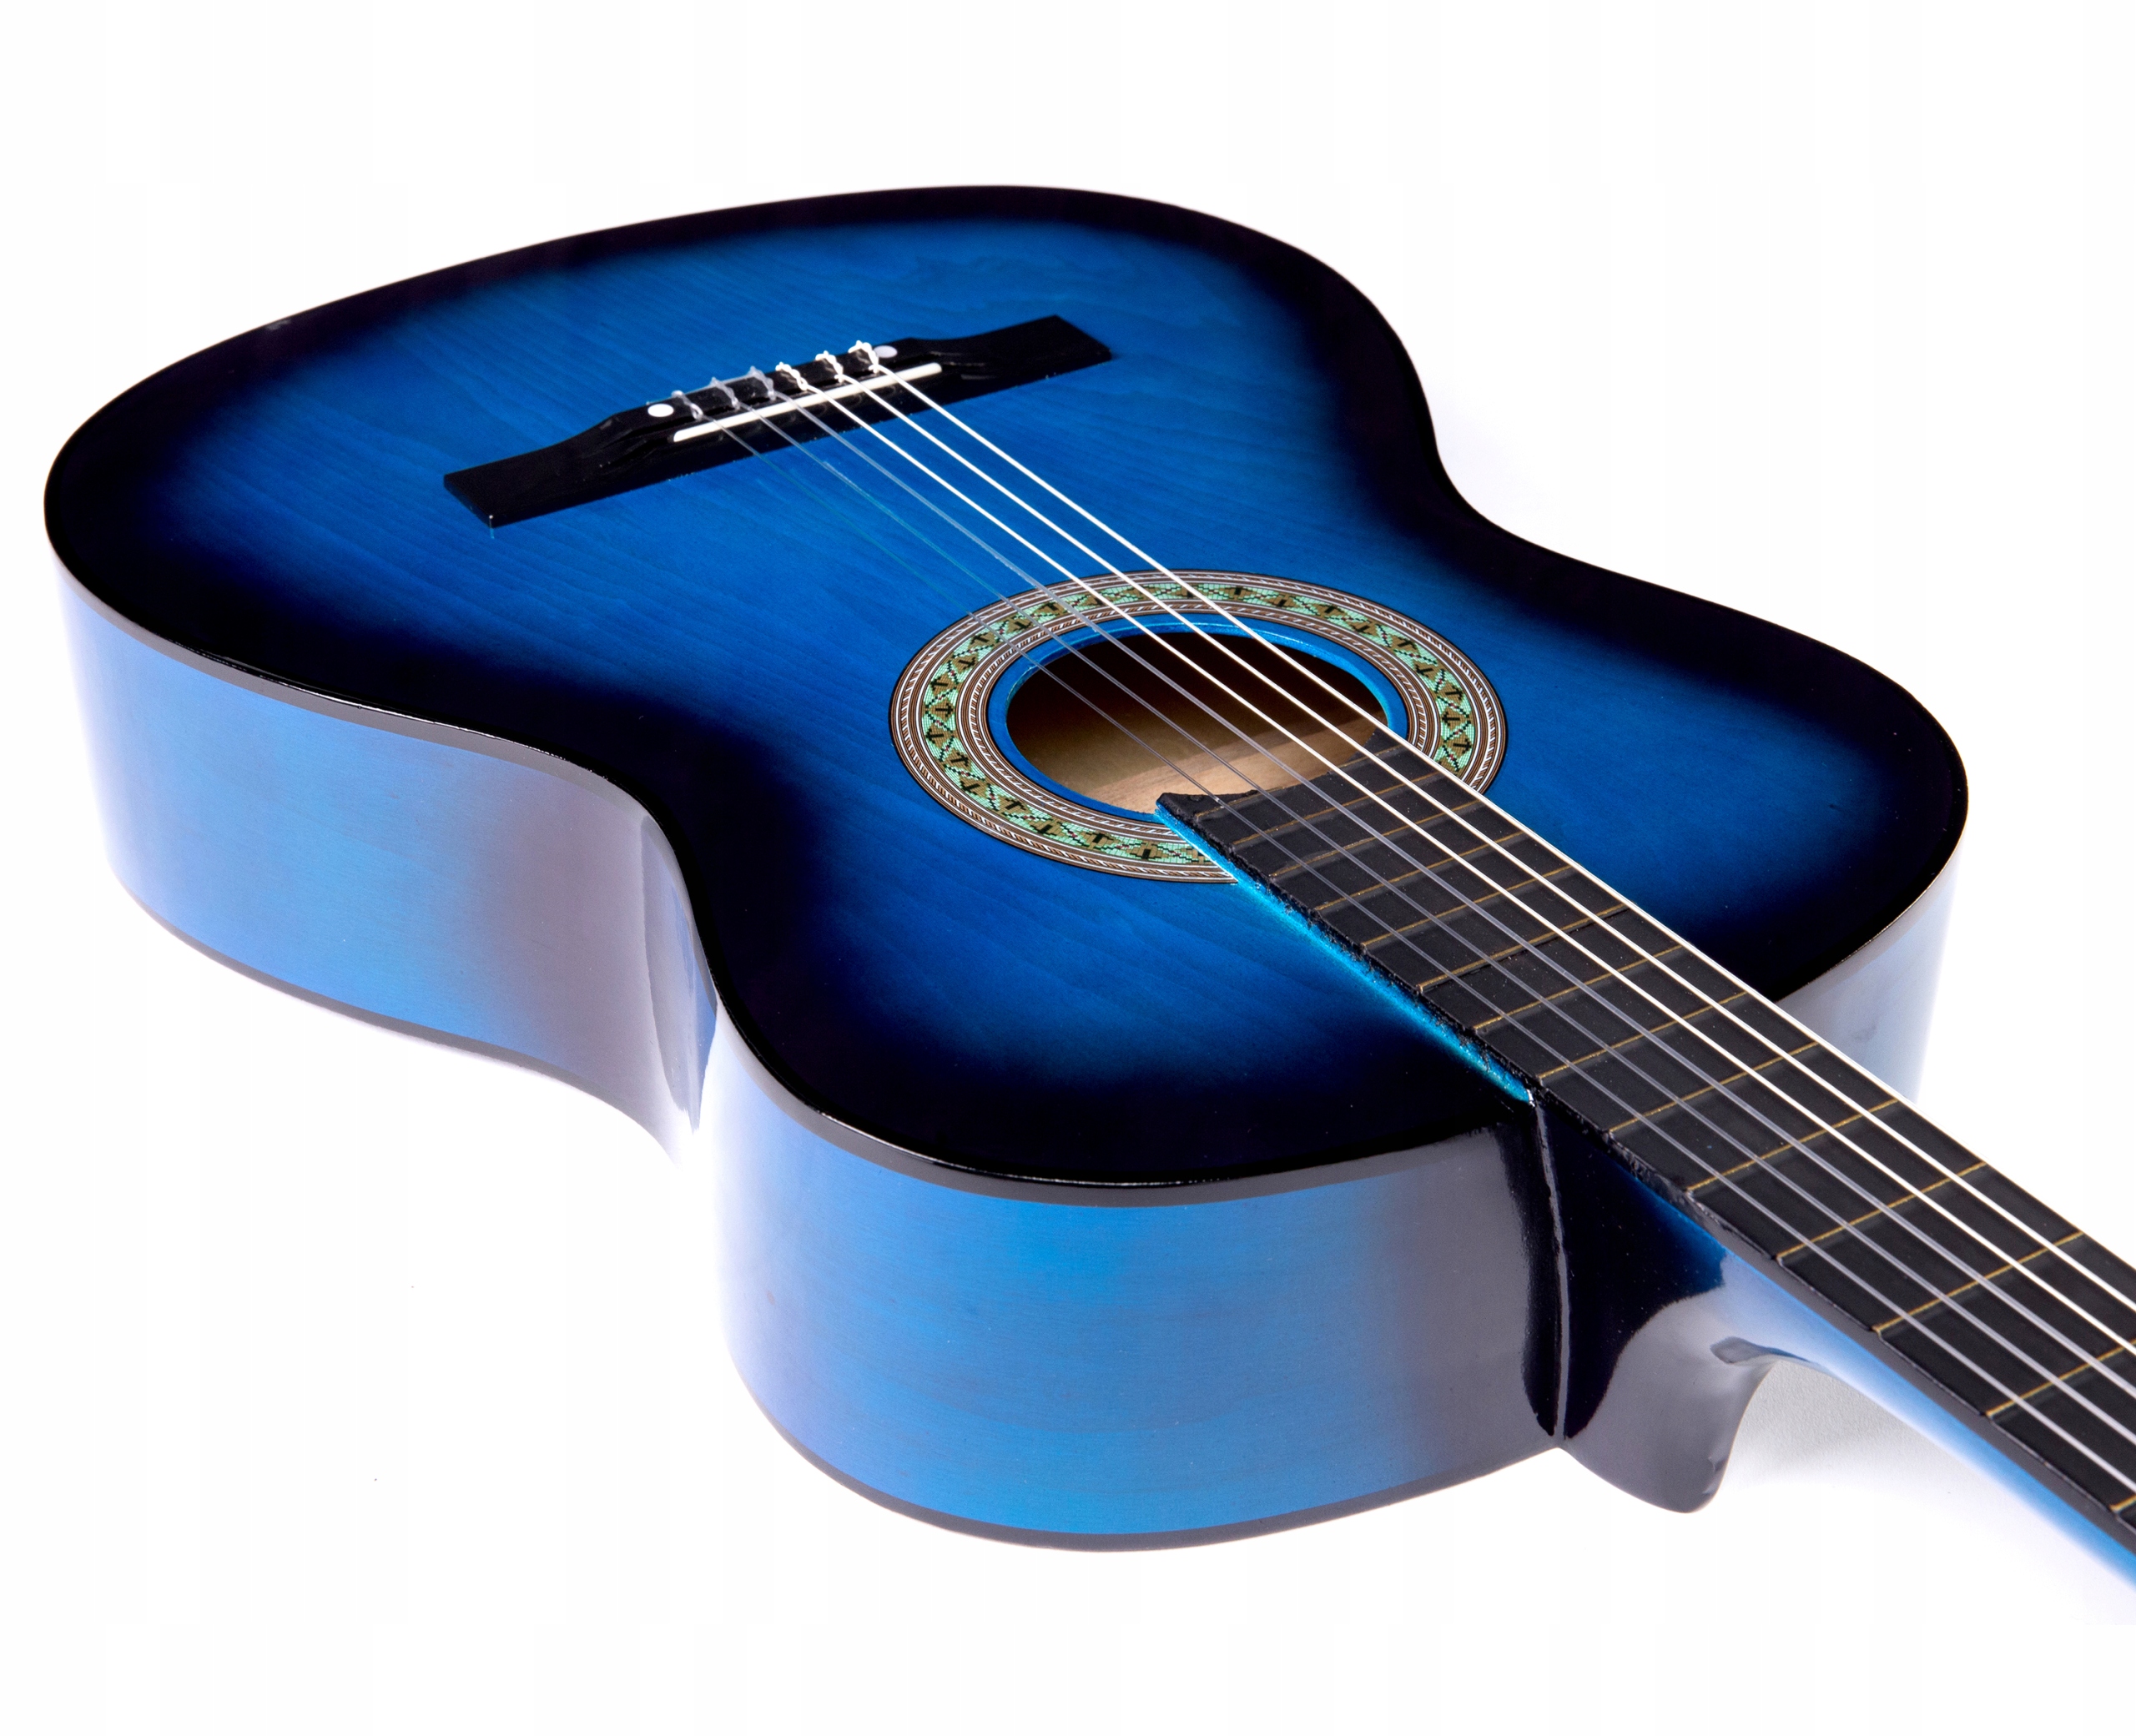 Купить гитару мальчику. Гитара Белуччи синяя. Гитара Jasmine c20 струны. Bellucci гитара голубая. Гитара классическая Yamaha синяя.